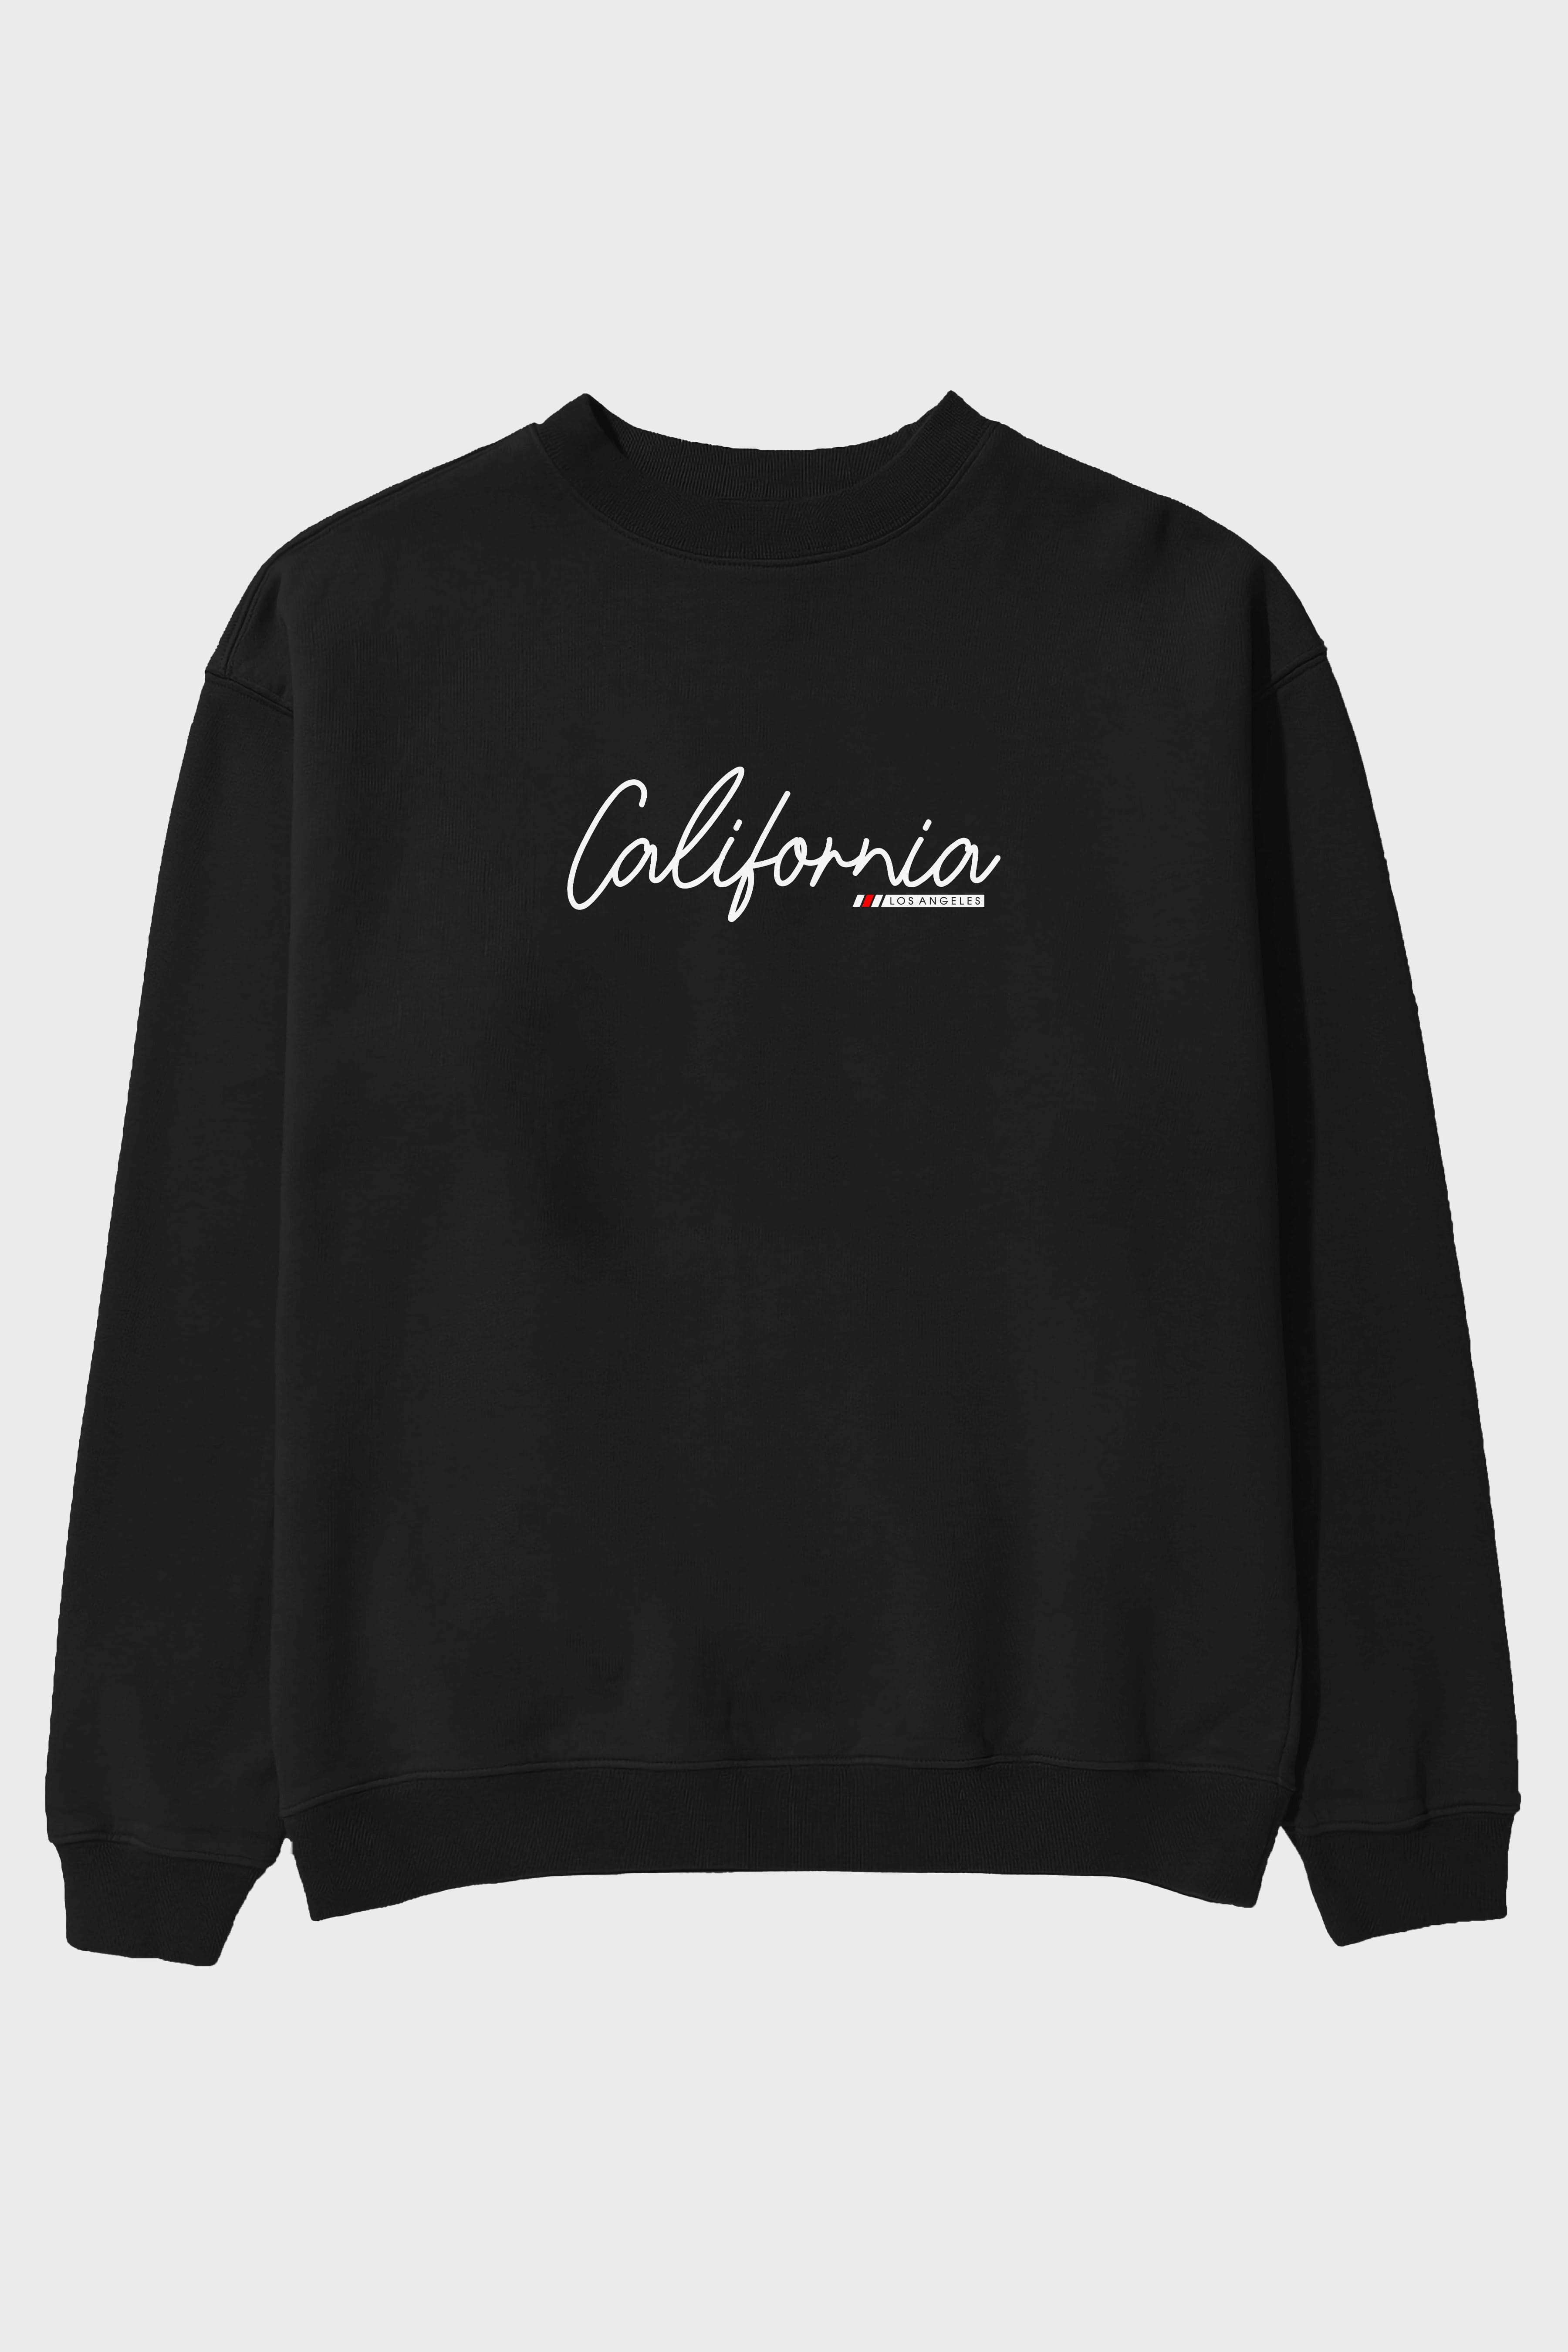 California Ön Baskılı Oversize Sweatshirt Erkek Kadın Unisex